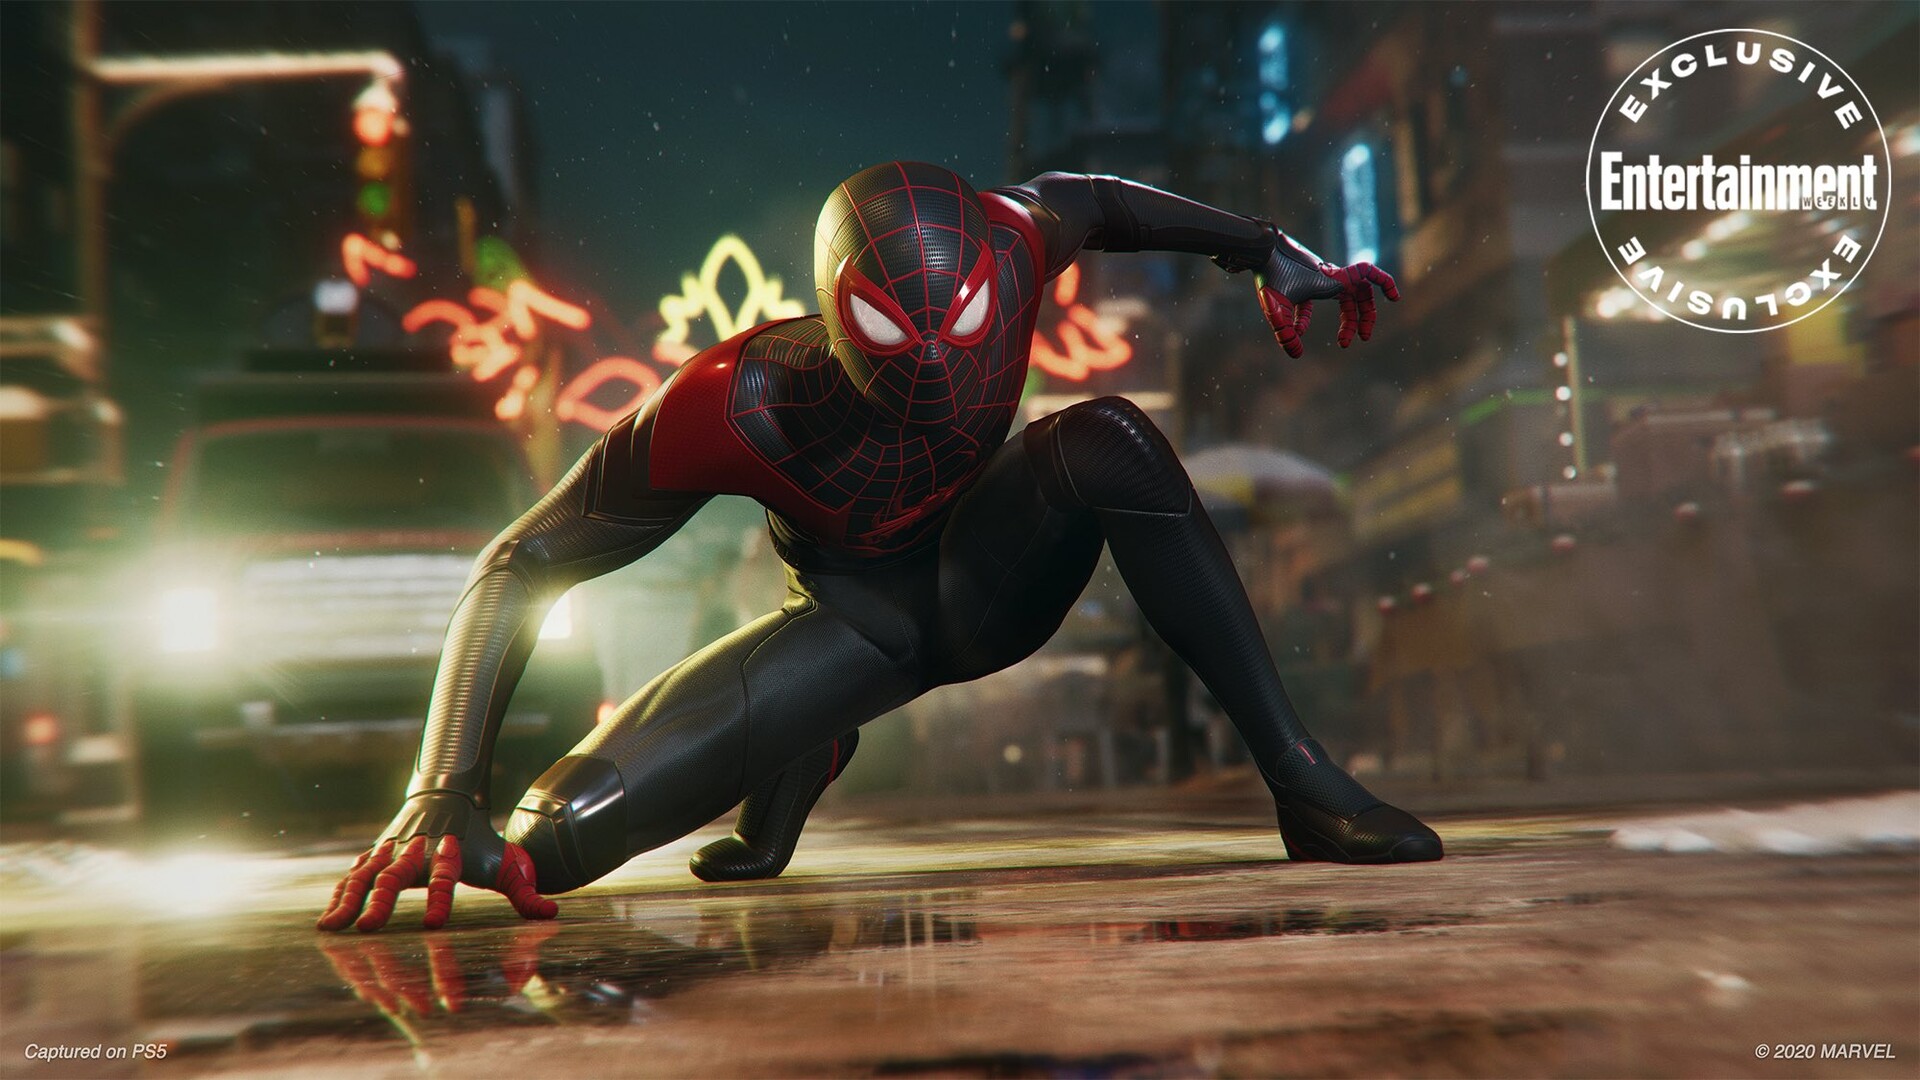 Marvel spiderman 2018 (ps4) usado rus playstation 4 jogar jogos